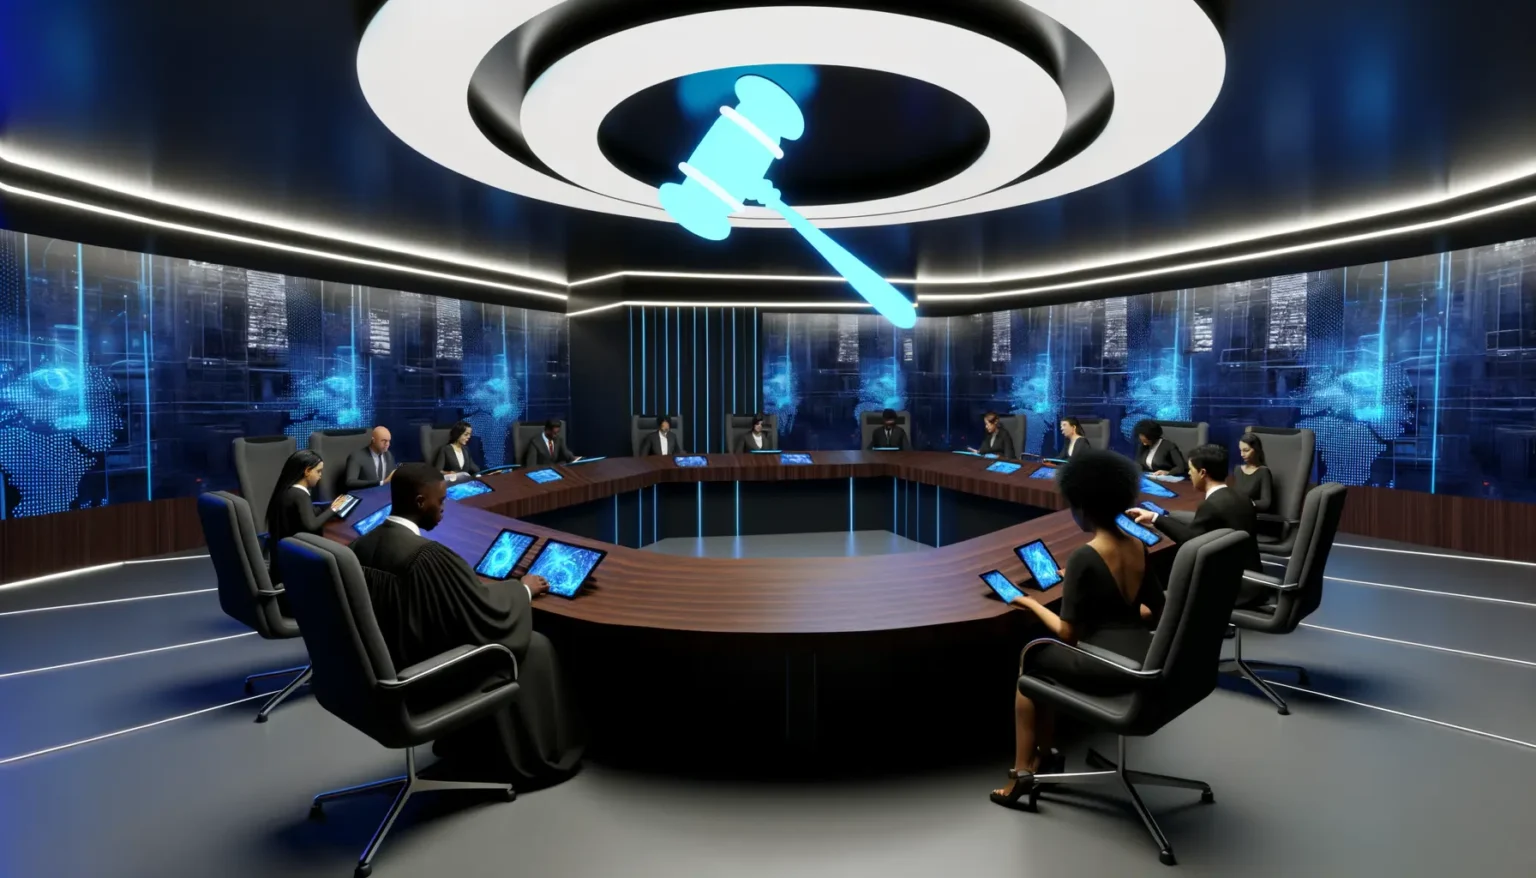 Moderne Besprechungsraum-Umgebung mit Personen an einem ovalen Konferenztisch, die digitale Tablets benutzen. Über dem Zentrum des Tisches schwebt ein großes, leuchtendes Symbol eines Richterhammers in blauer Neon-Optik. Die Wand im Hintergrund ist mit digitalen Bildschirmen verziert, die eine futuristisch anmutende, blau leuchtende Stadtsilhouette zeigen.